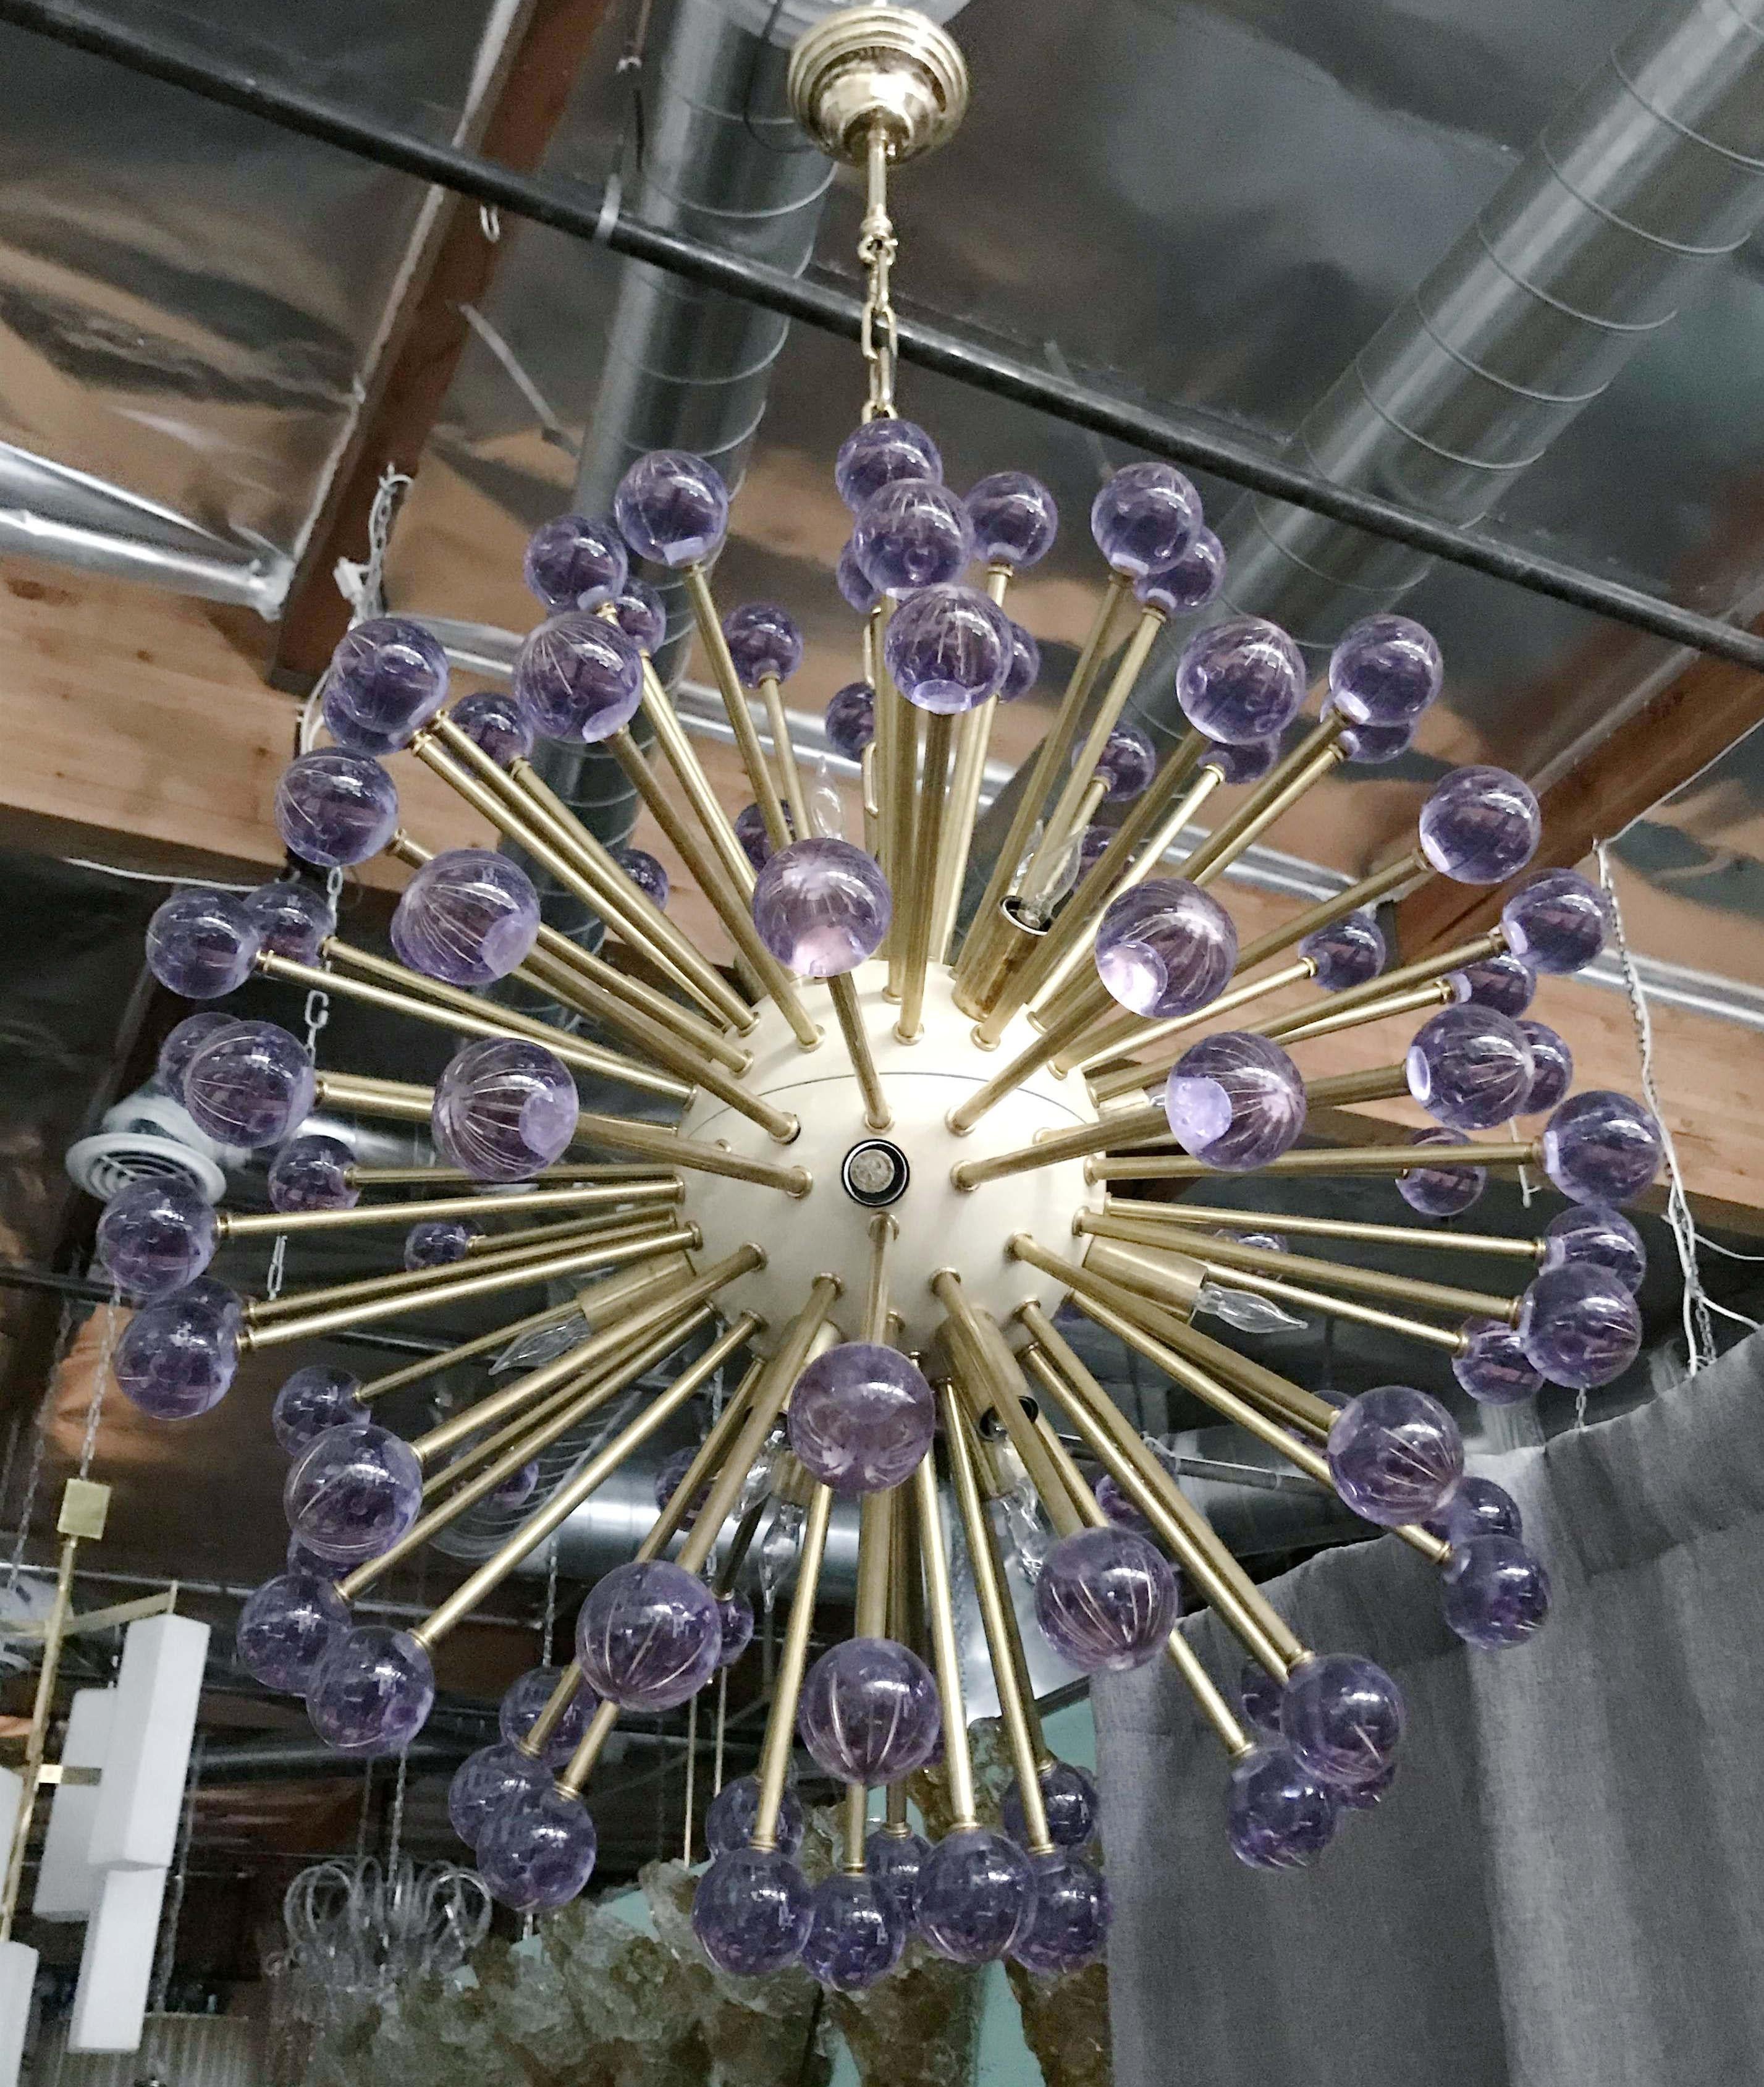 Lustre Sputnik italien moderne avec des sphères en verre de Murano violet, centre émaillé crème, monté sur une structure en laiton / Designed by Fabio Bergomi for Fabio Ltd / Made in Italy
16 lampes / type E12 ou E14 / max 40W chacune
Mesures :